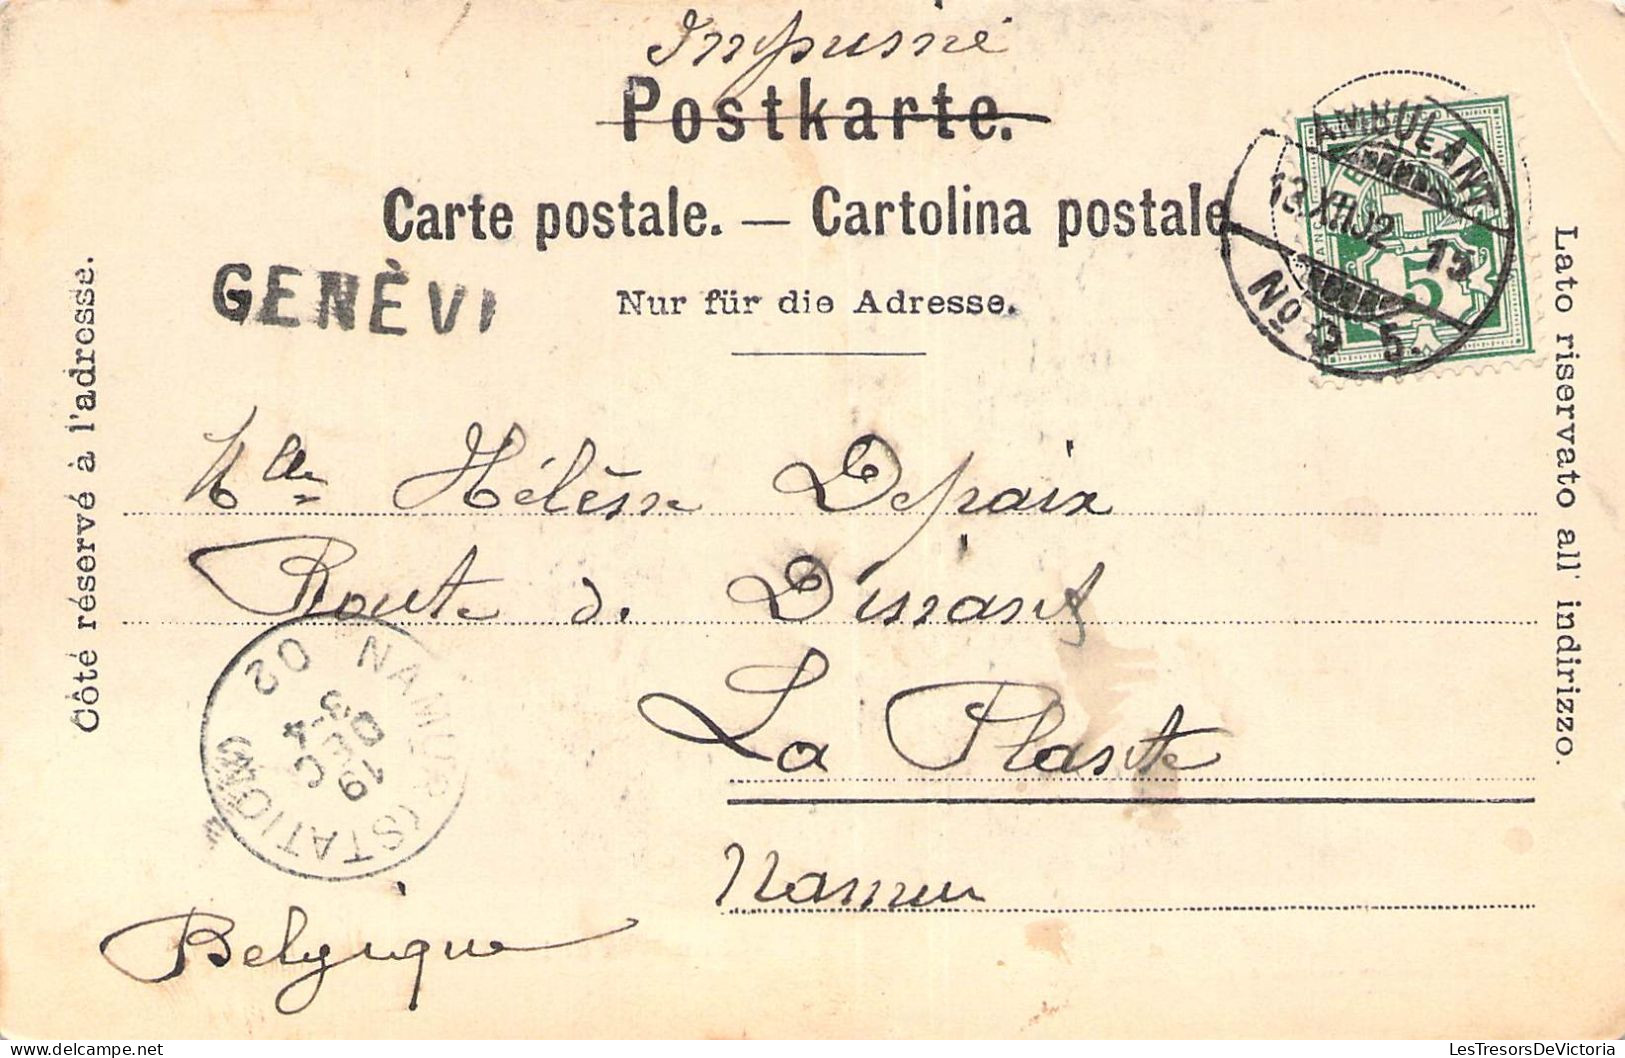 FRANCE - 74 - CHAMONIX  - Chamonix Et Le Brévent - Carte Postale Ancienne - Saint-Gervais-les-Bains